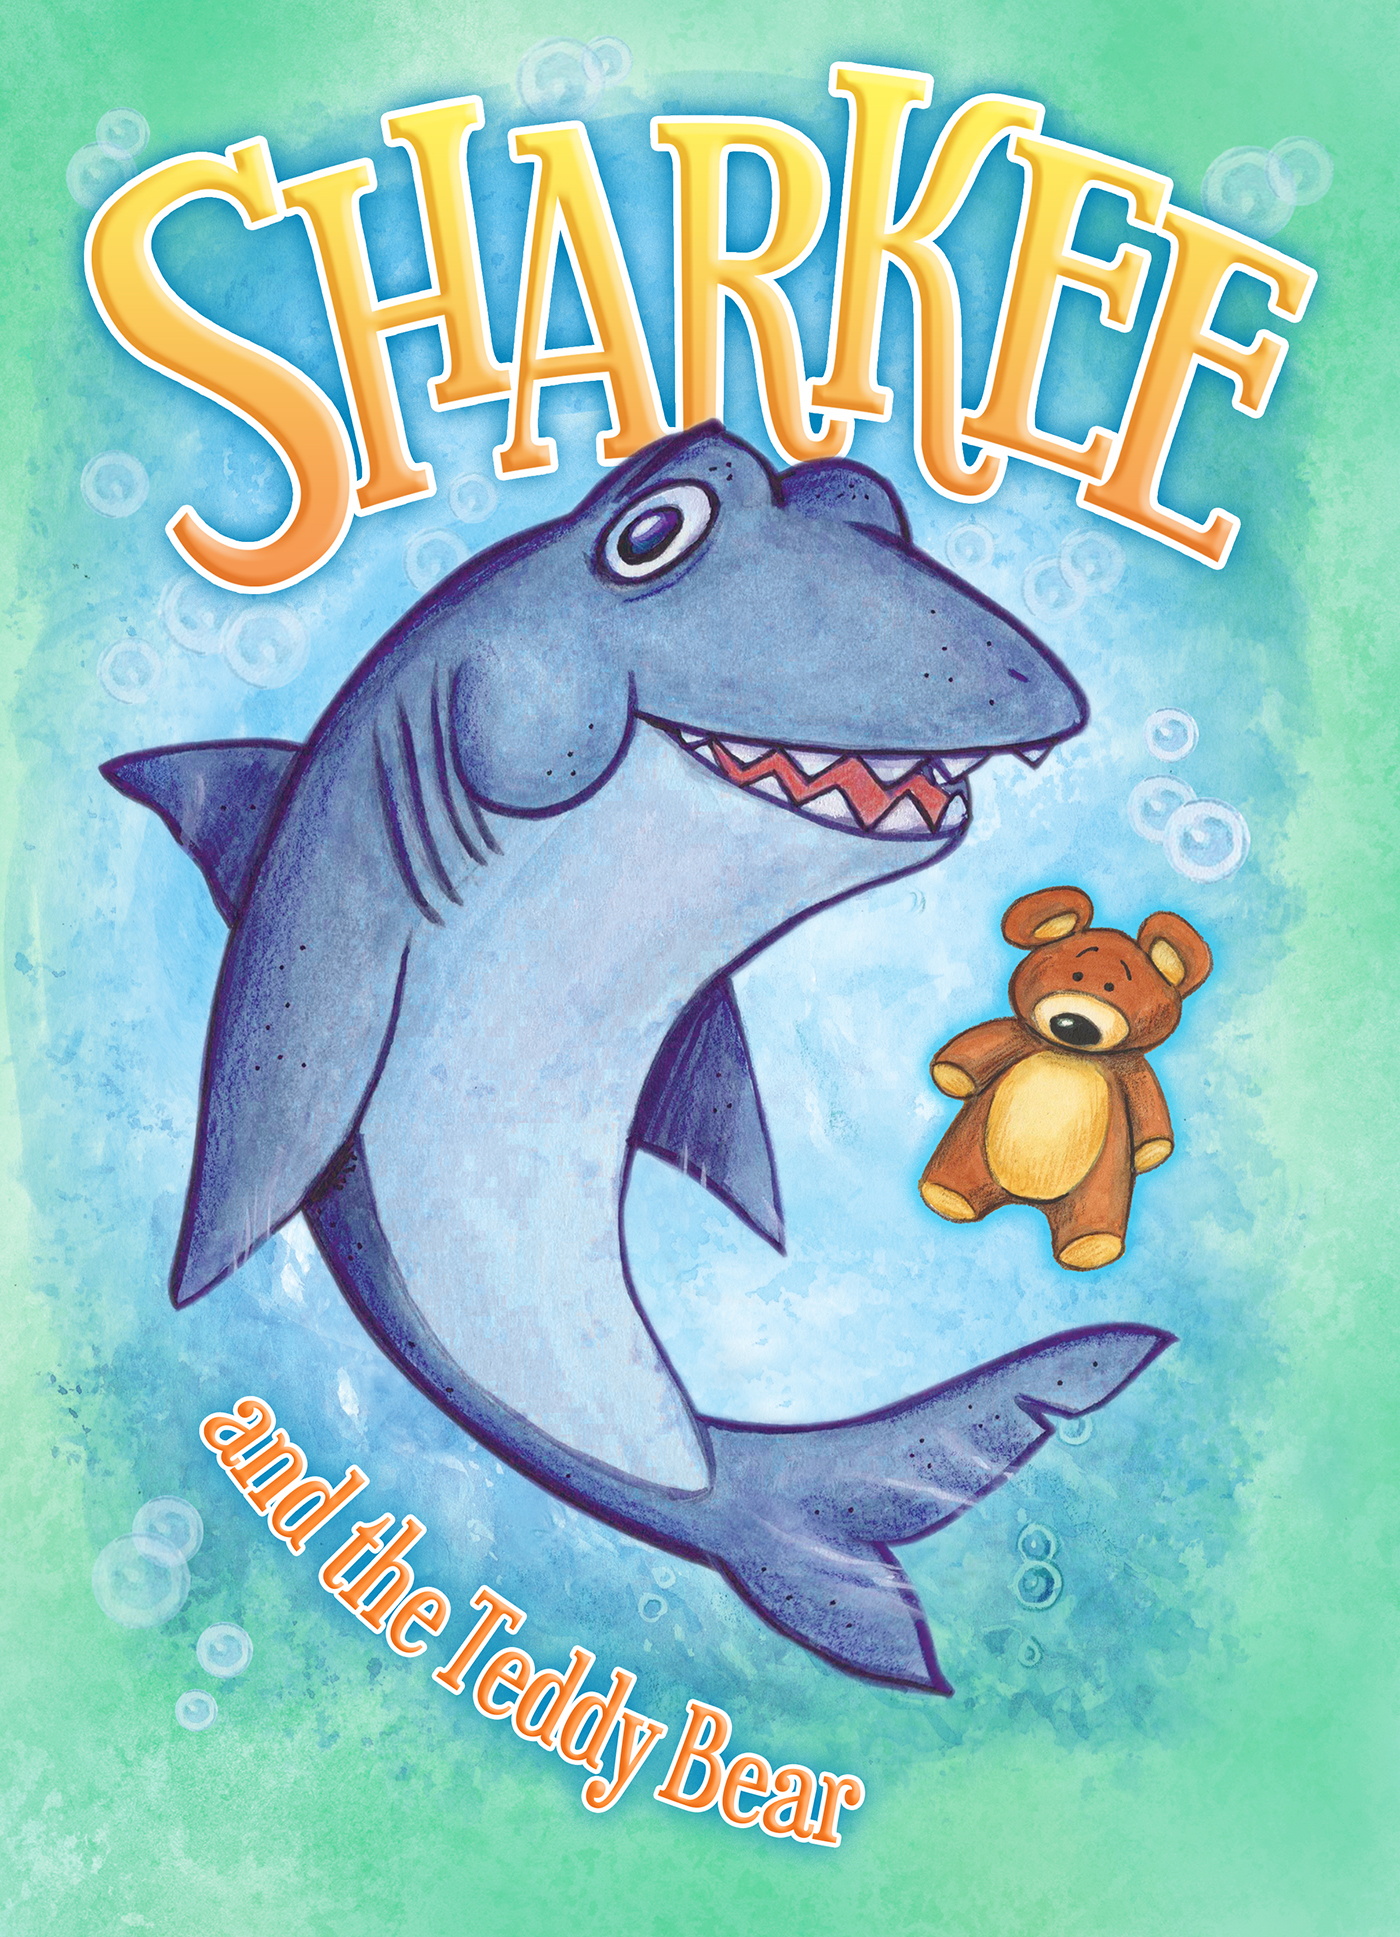 Sharkee and the Teddy Bear